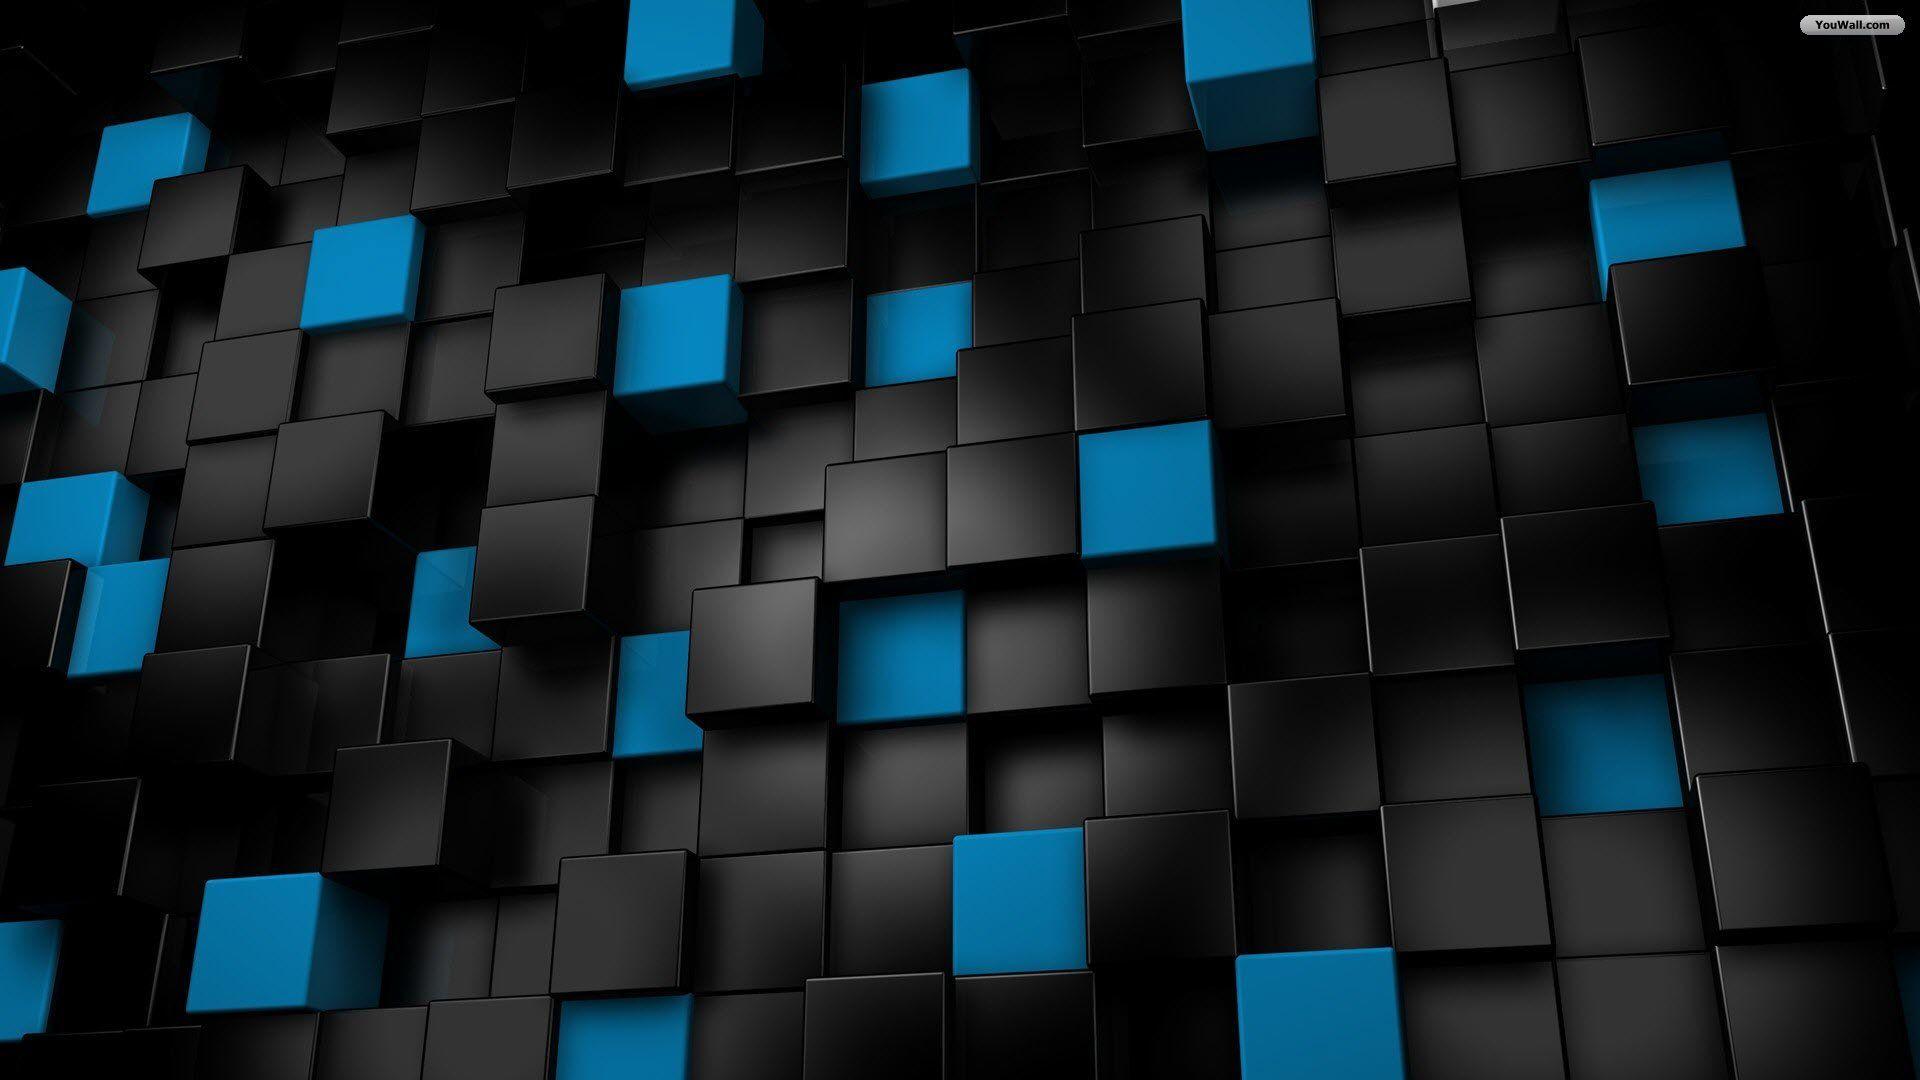 Hình nền đen xanh 3D đầy sống động và mạnh mẽ. Với sự kết hợp tuyệt vời của màu đen và xanh, bạn sẽ có một bộ sưu tập hình nền độc đáo và nổi bật. Hãy tải ngay những hình nền đen xanh 3D để cảm nhận độ tinh tế và độc đáo của chúng.